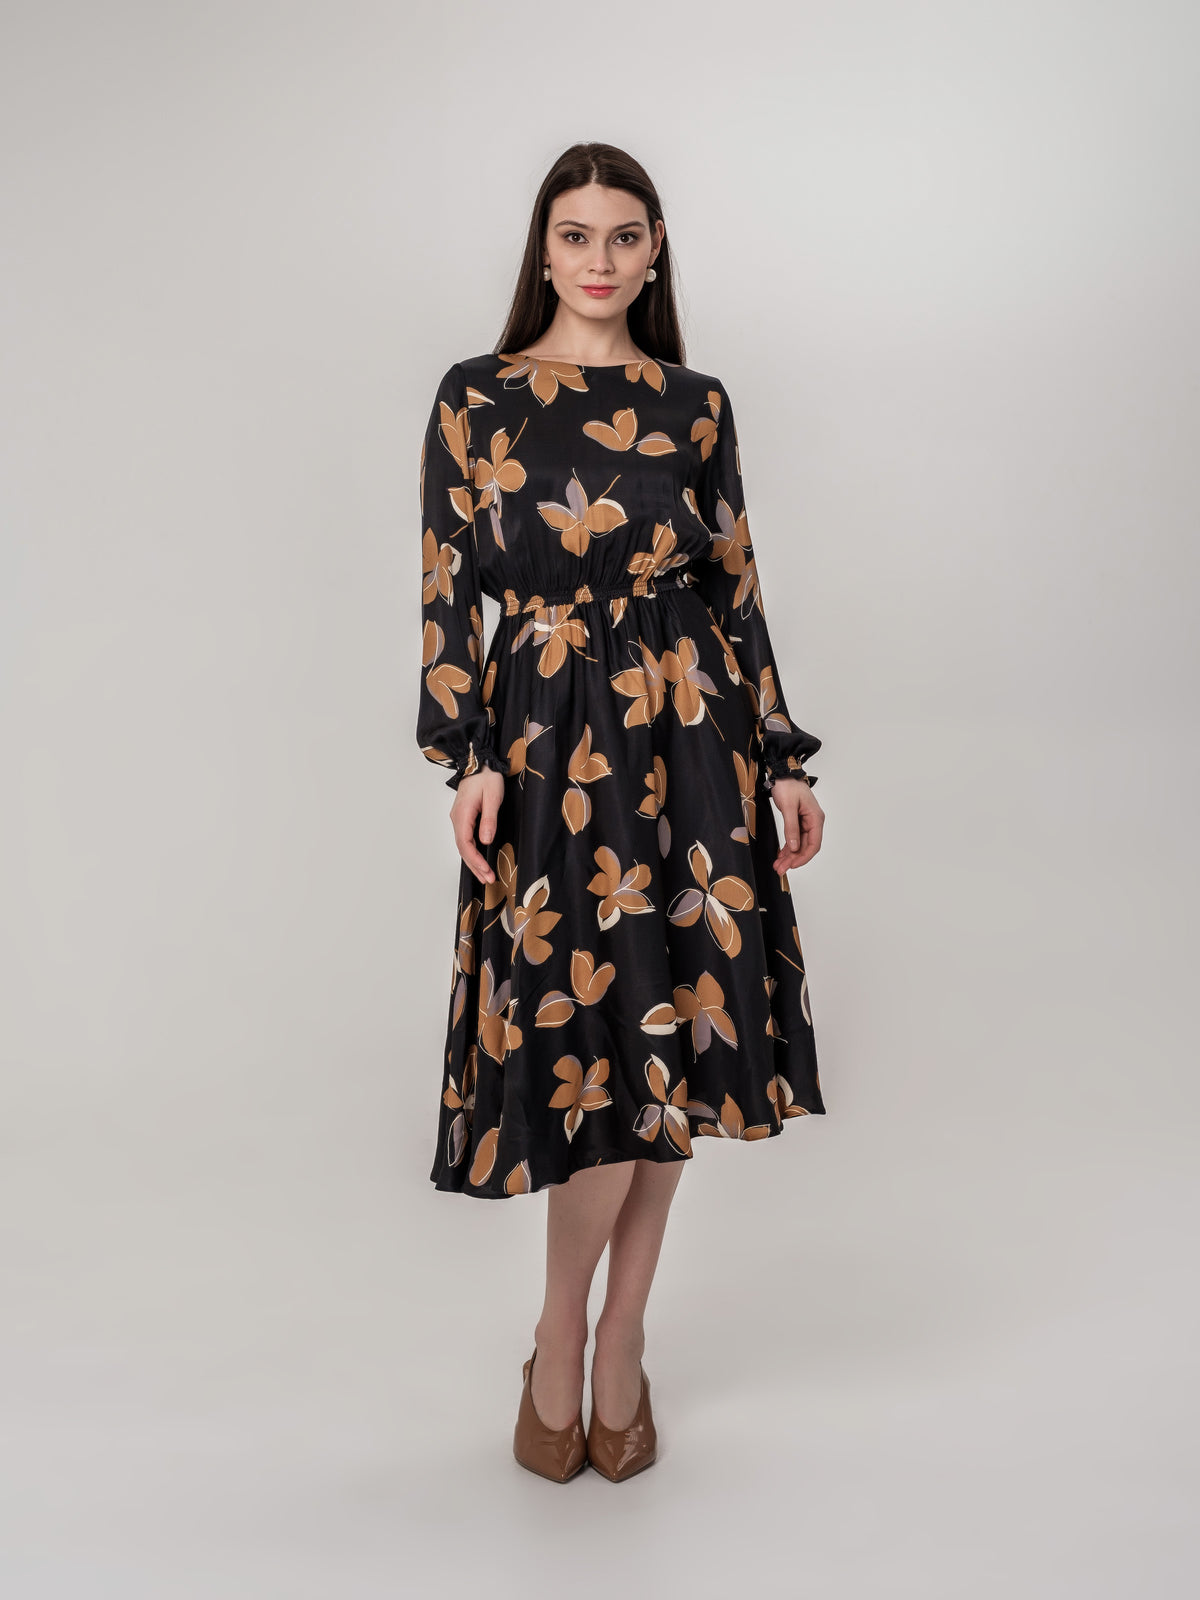 Black Midi Dress with Brown Flowers vintage